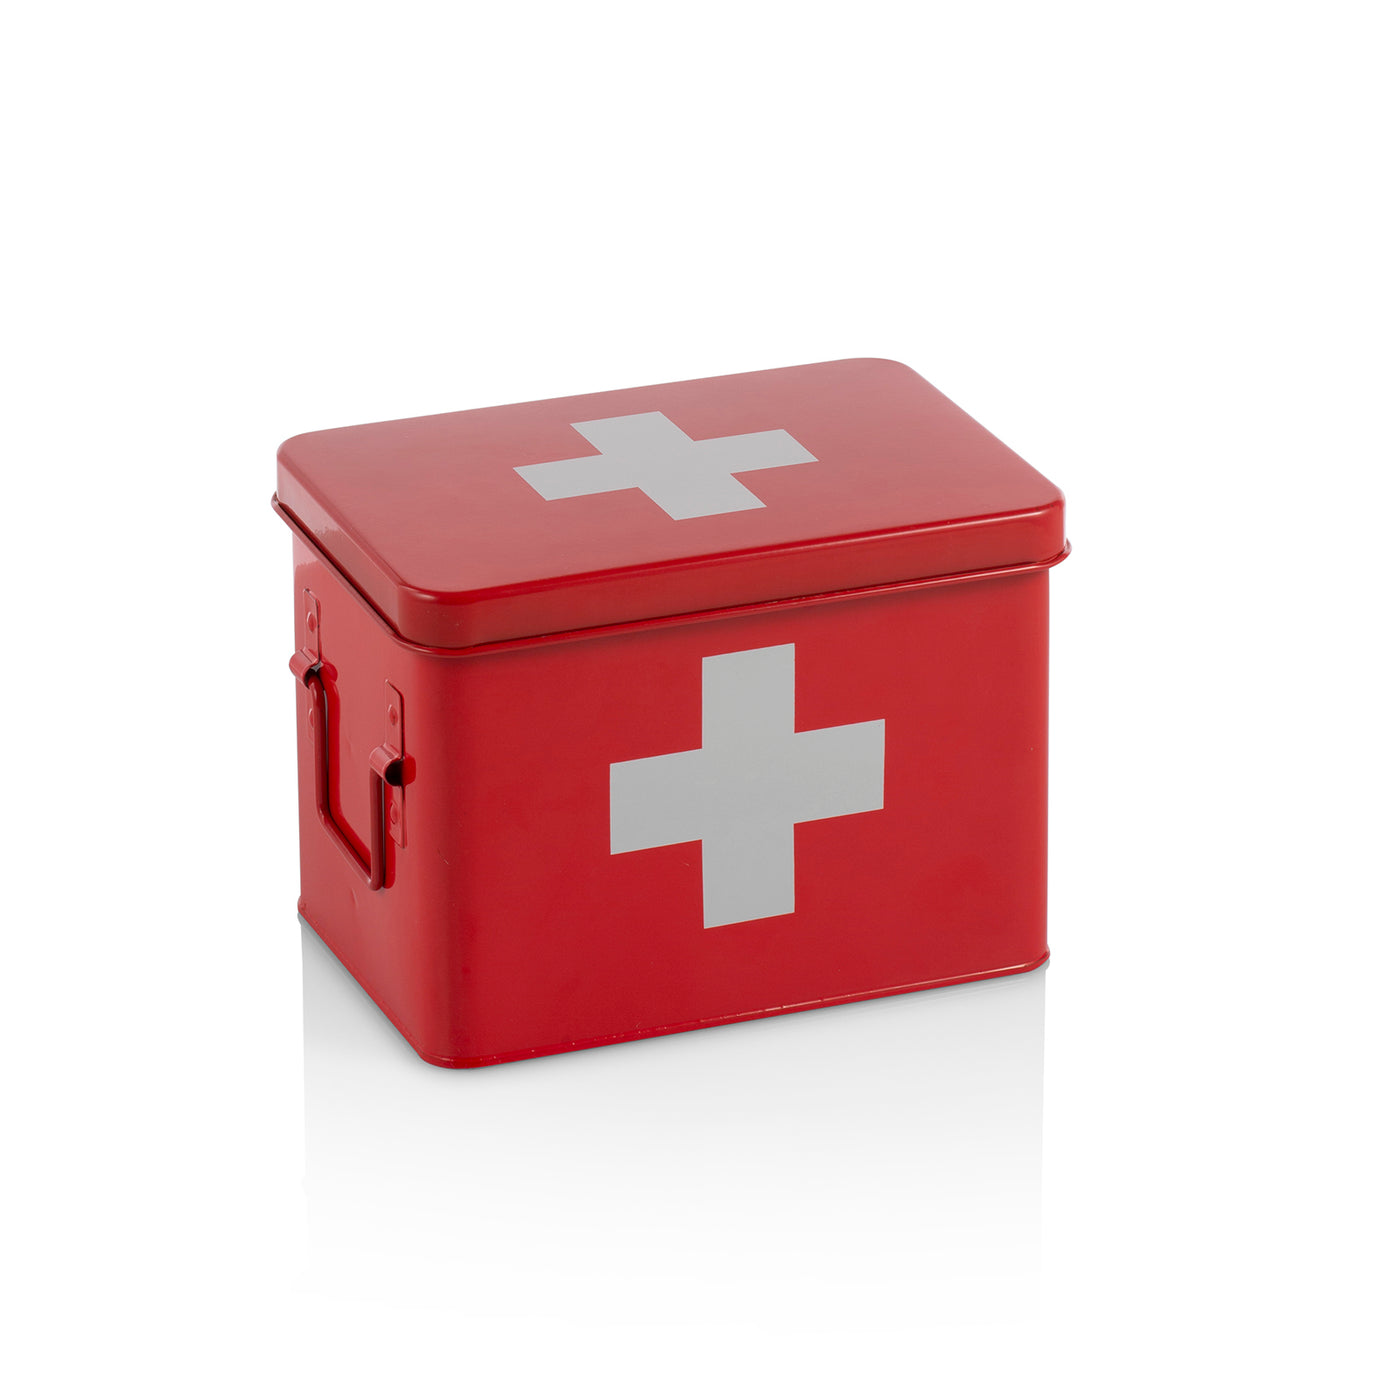 Roter DOC-Erste-Hilfe-Kasten